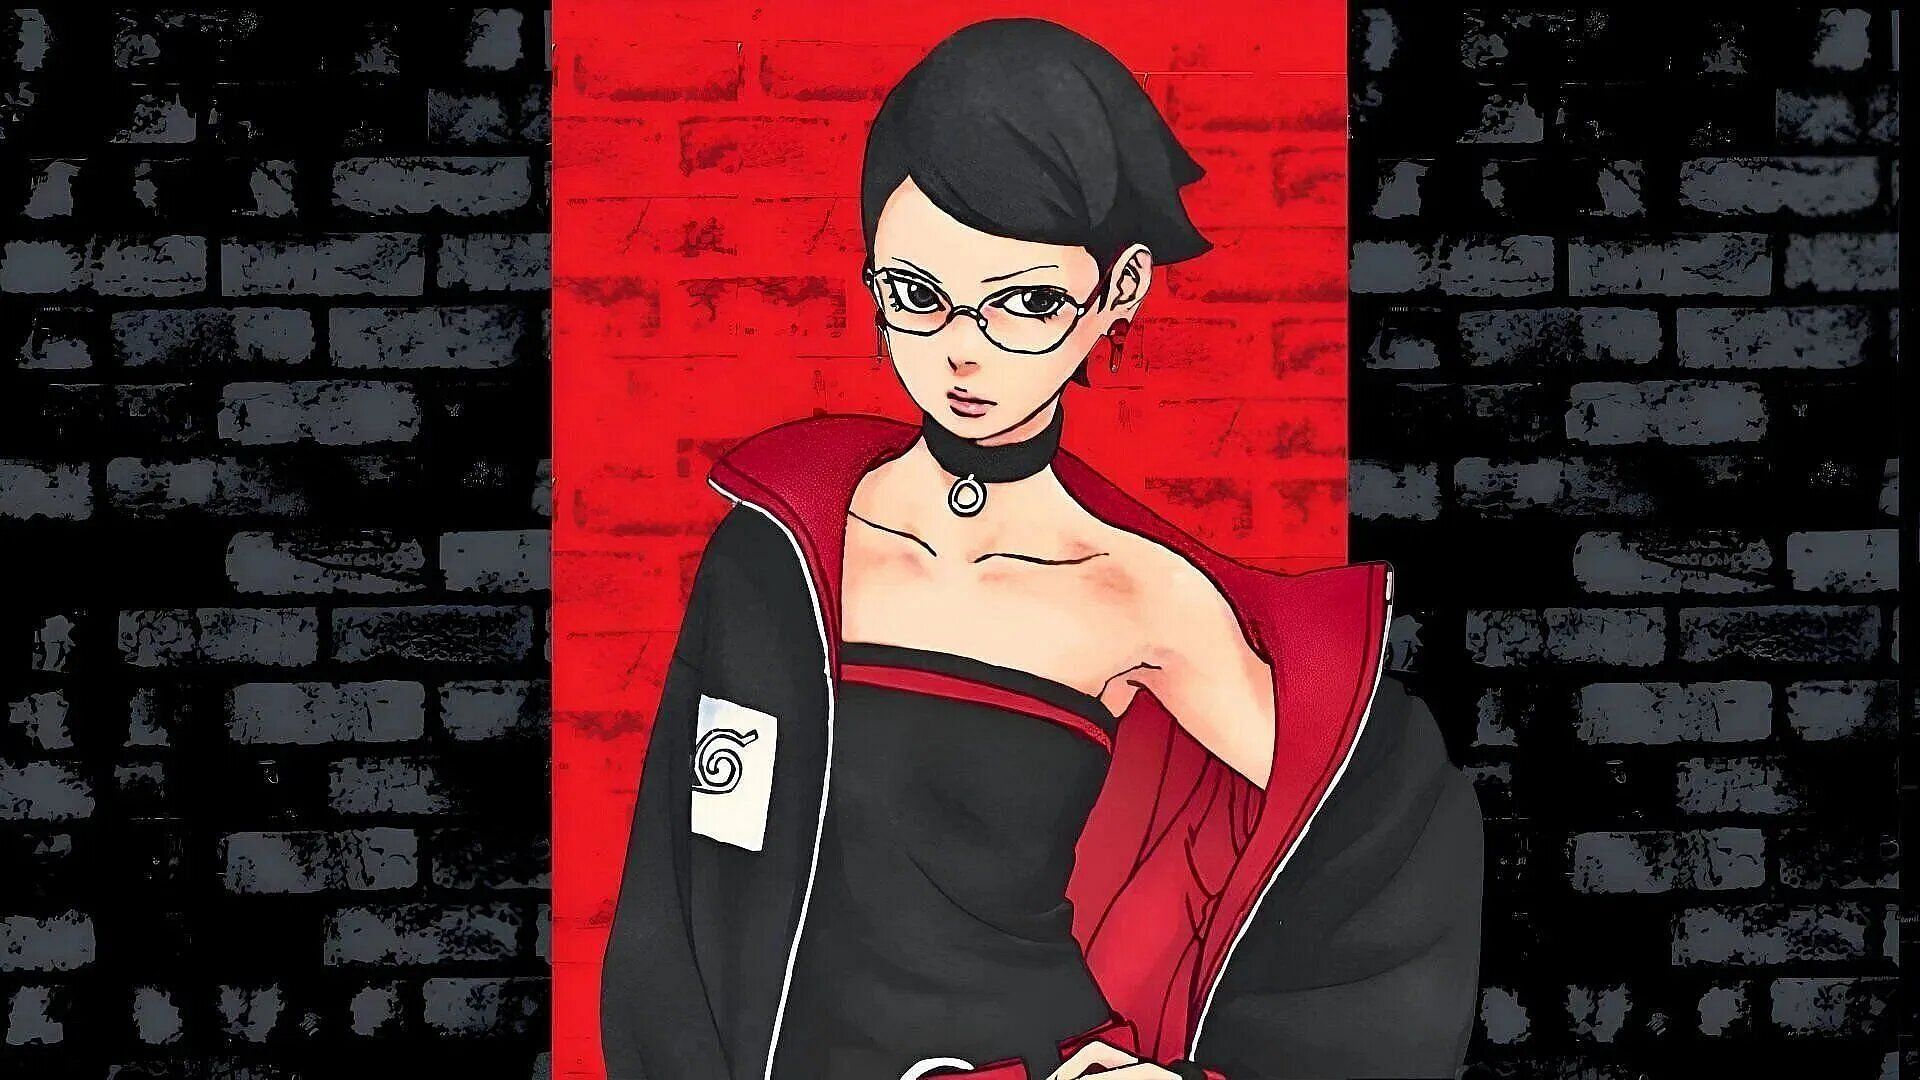 Sarada Uchiha as seen in the manga series (Image via Shueisha)